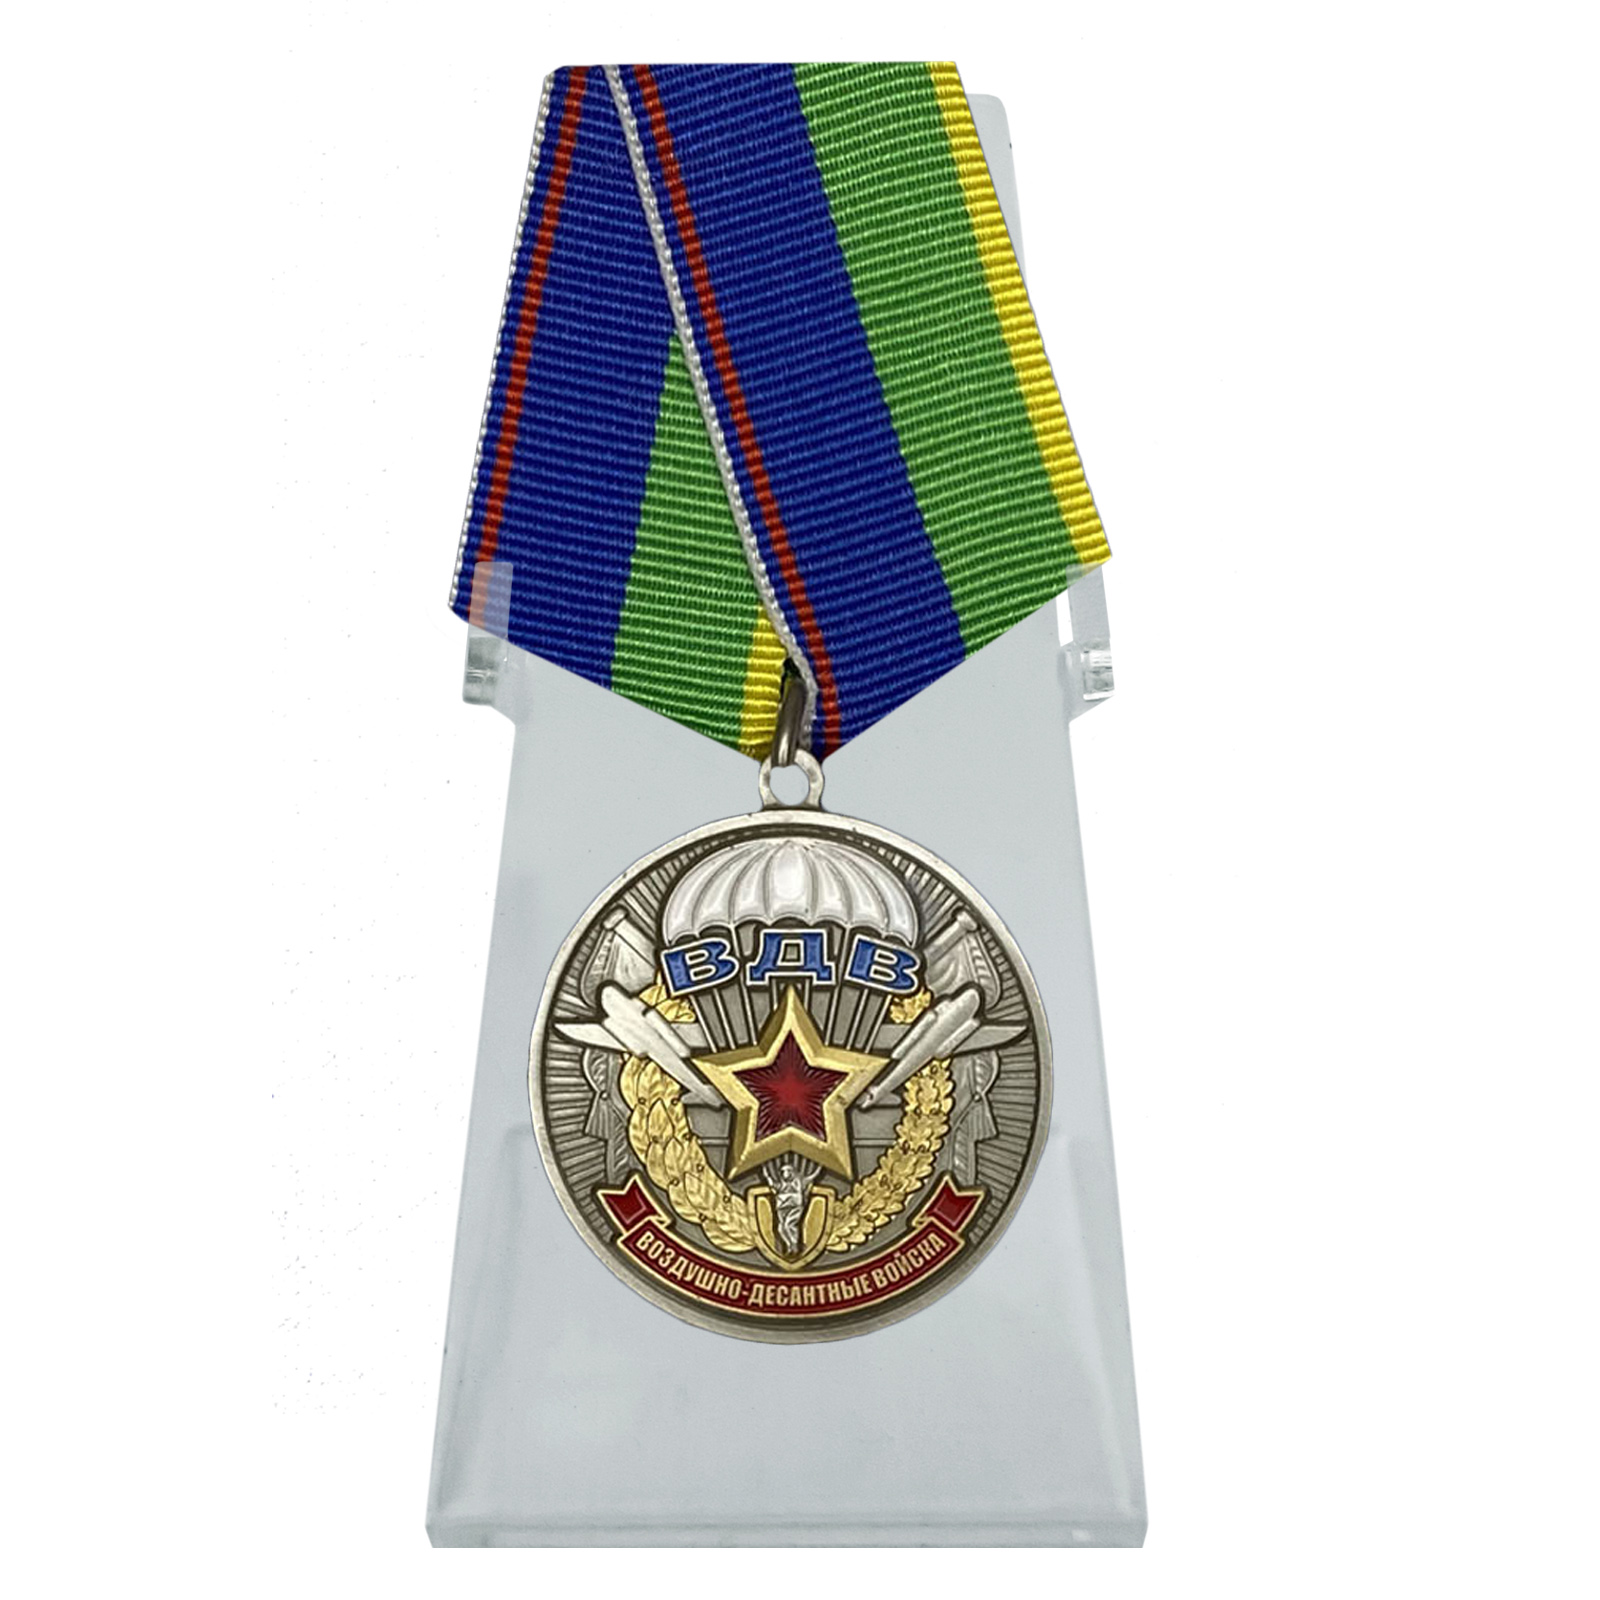 Купить медаль Ветерану воздушно-десантных войск на подставке онлайн